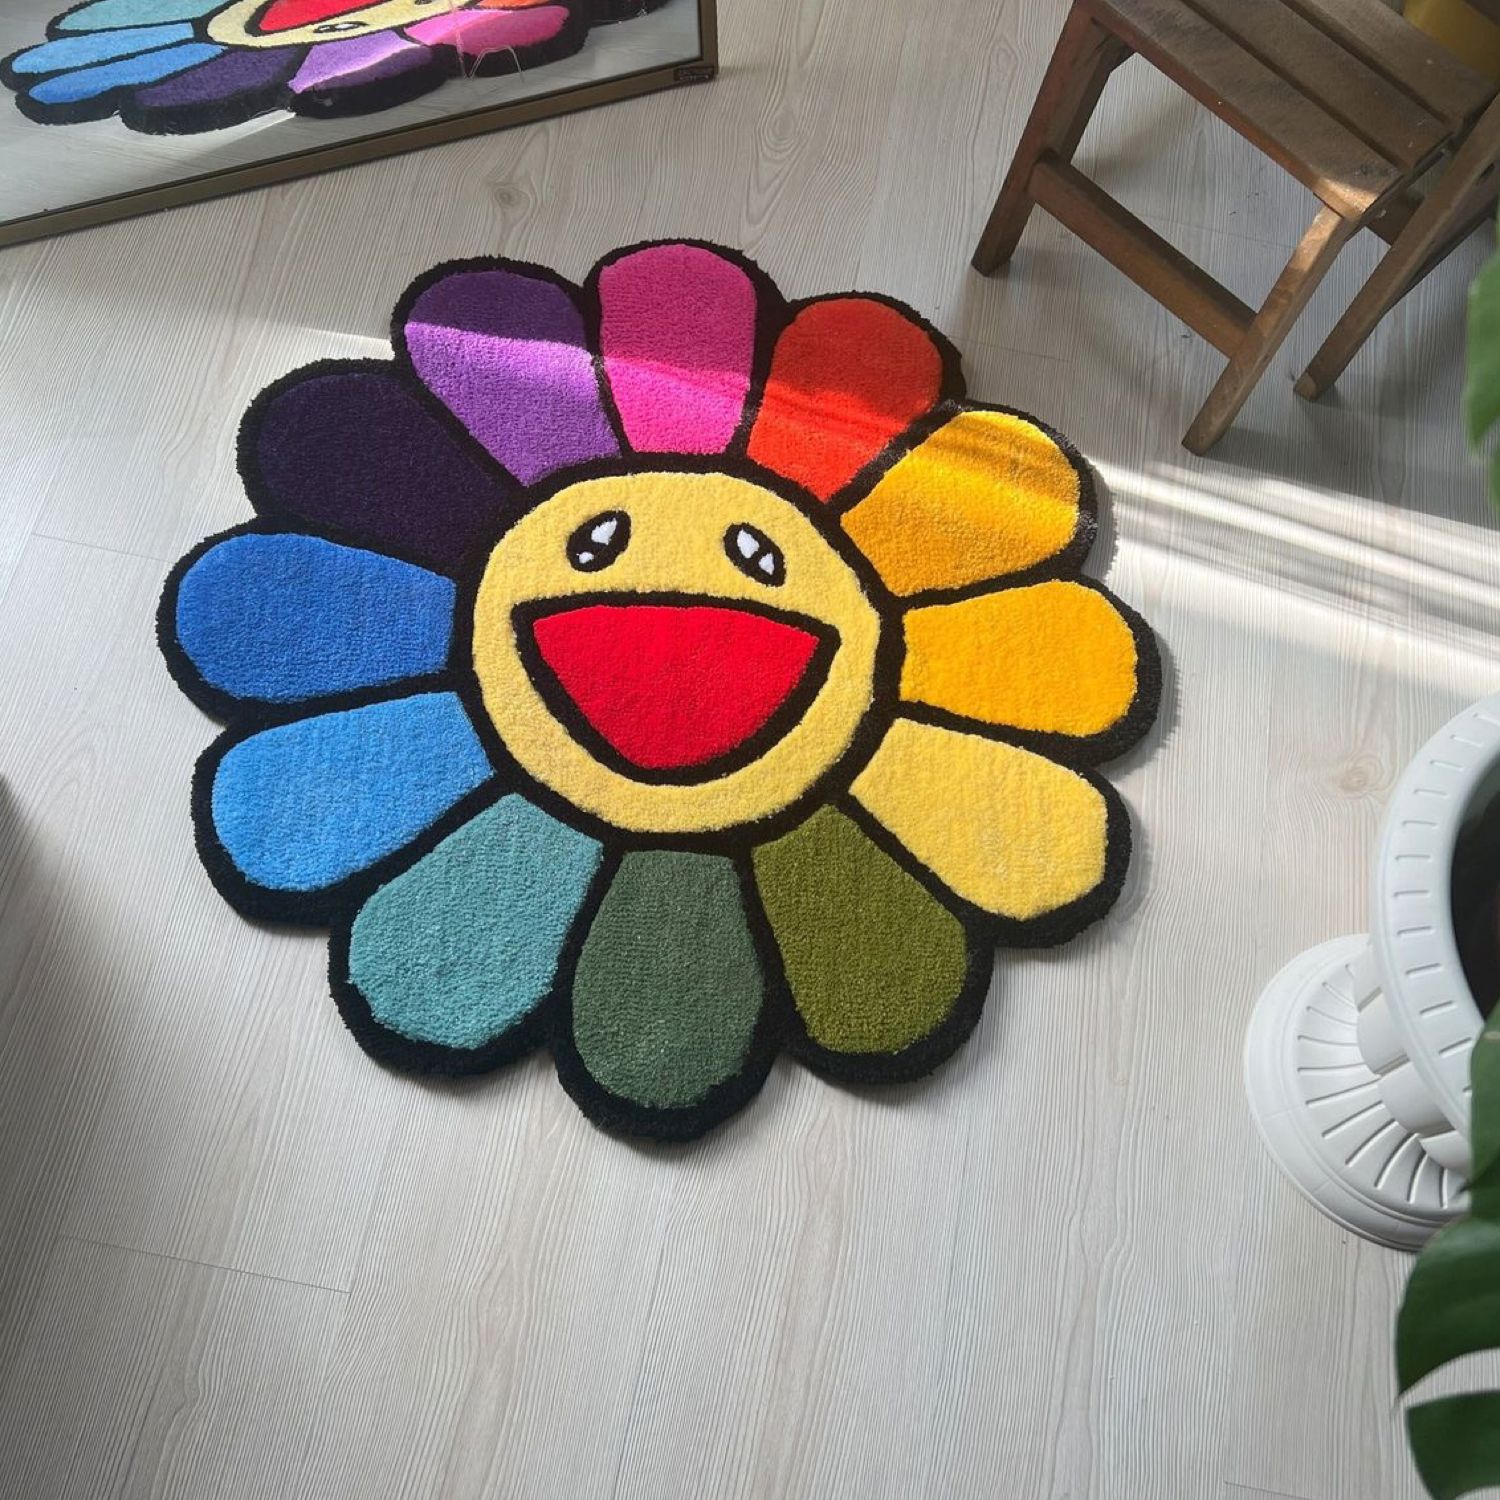 שטיח לבית טקאשי פרח